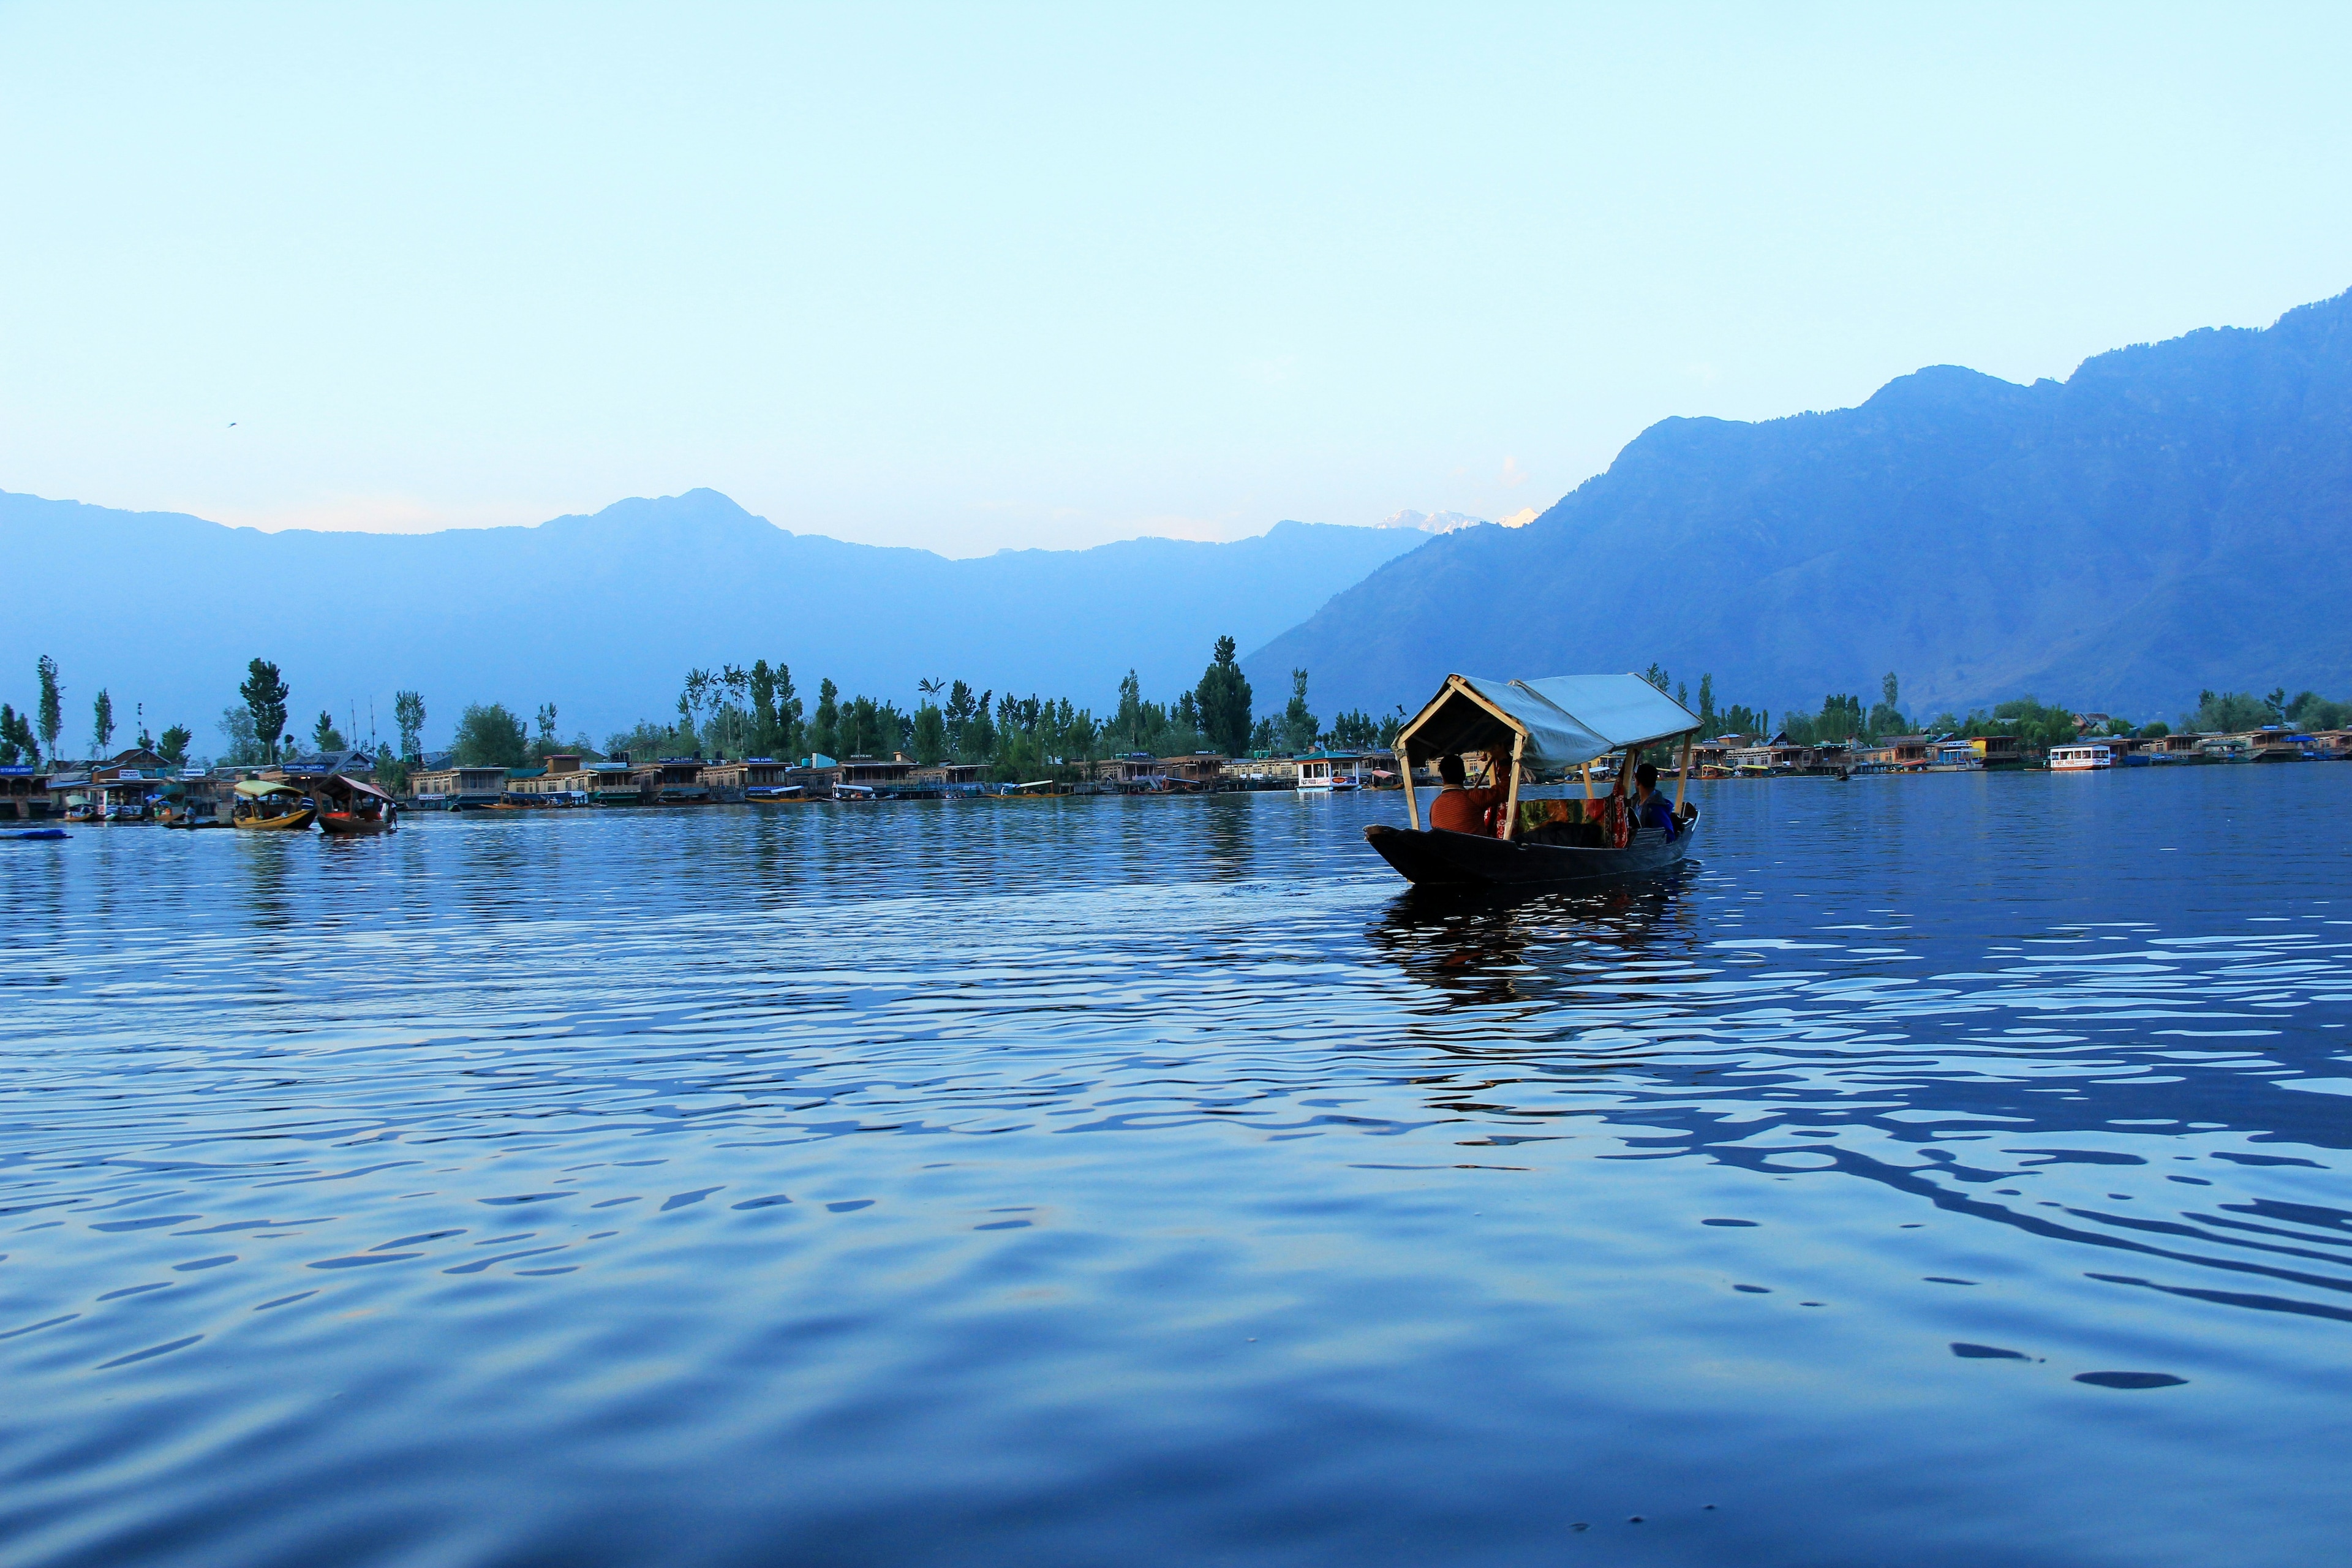 Taking in the Surreal Beauty of Dal Jheel in Kashmir